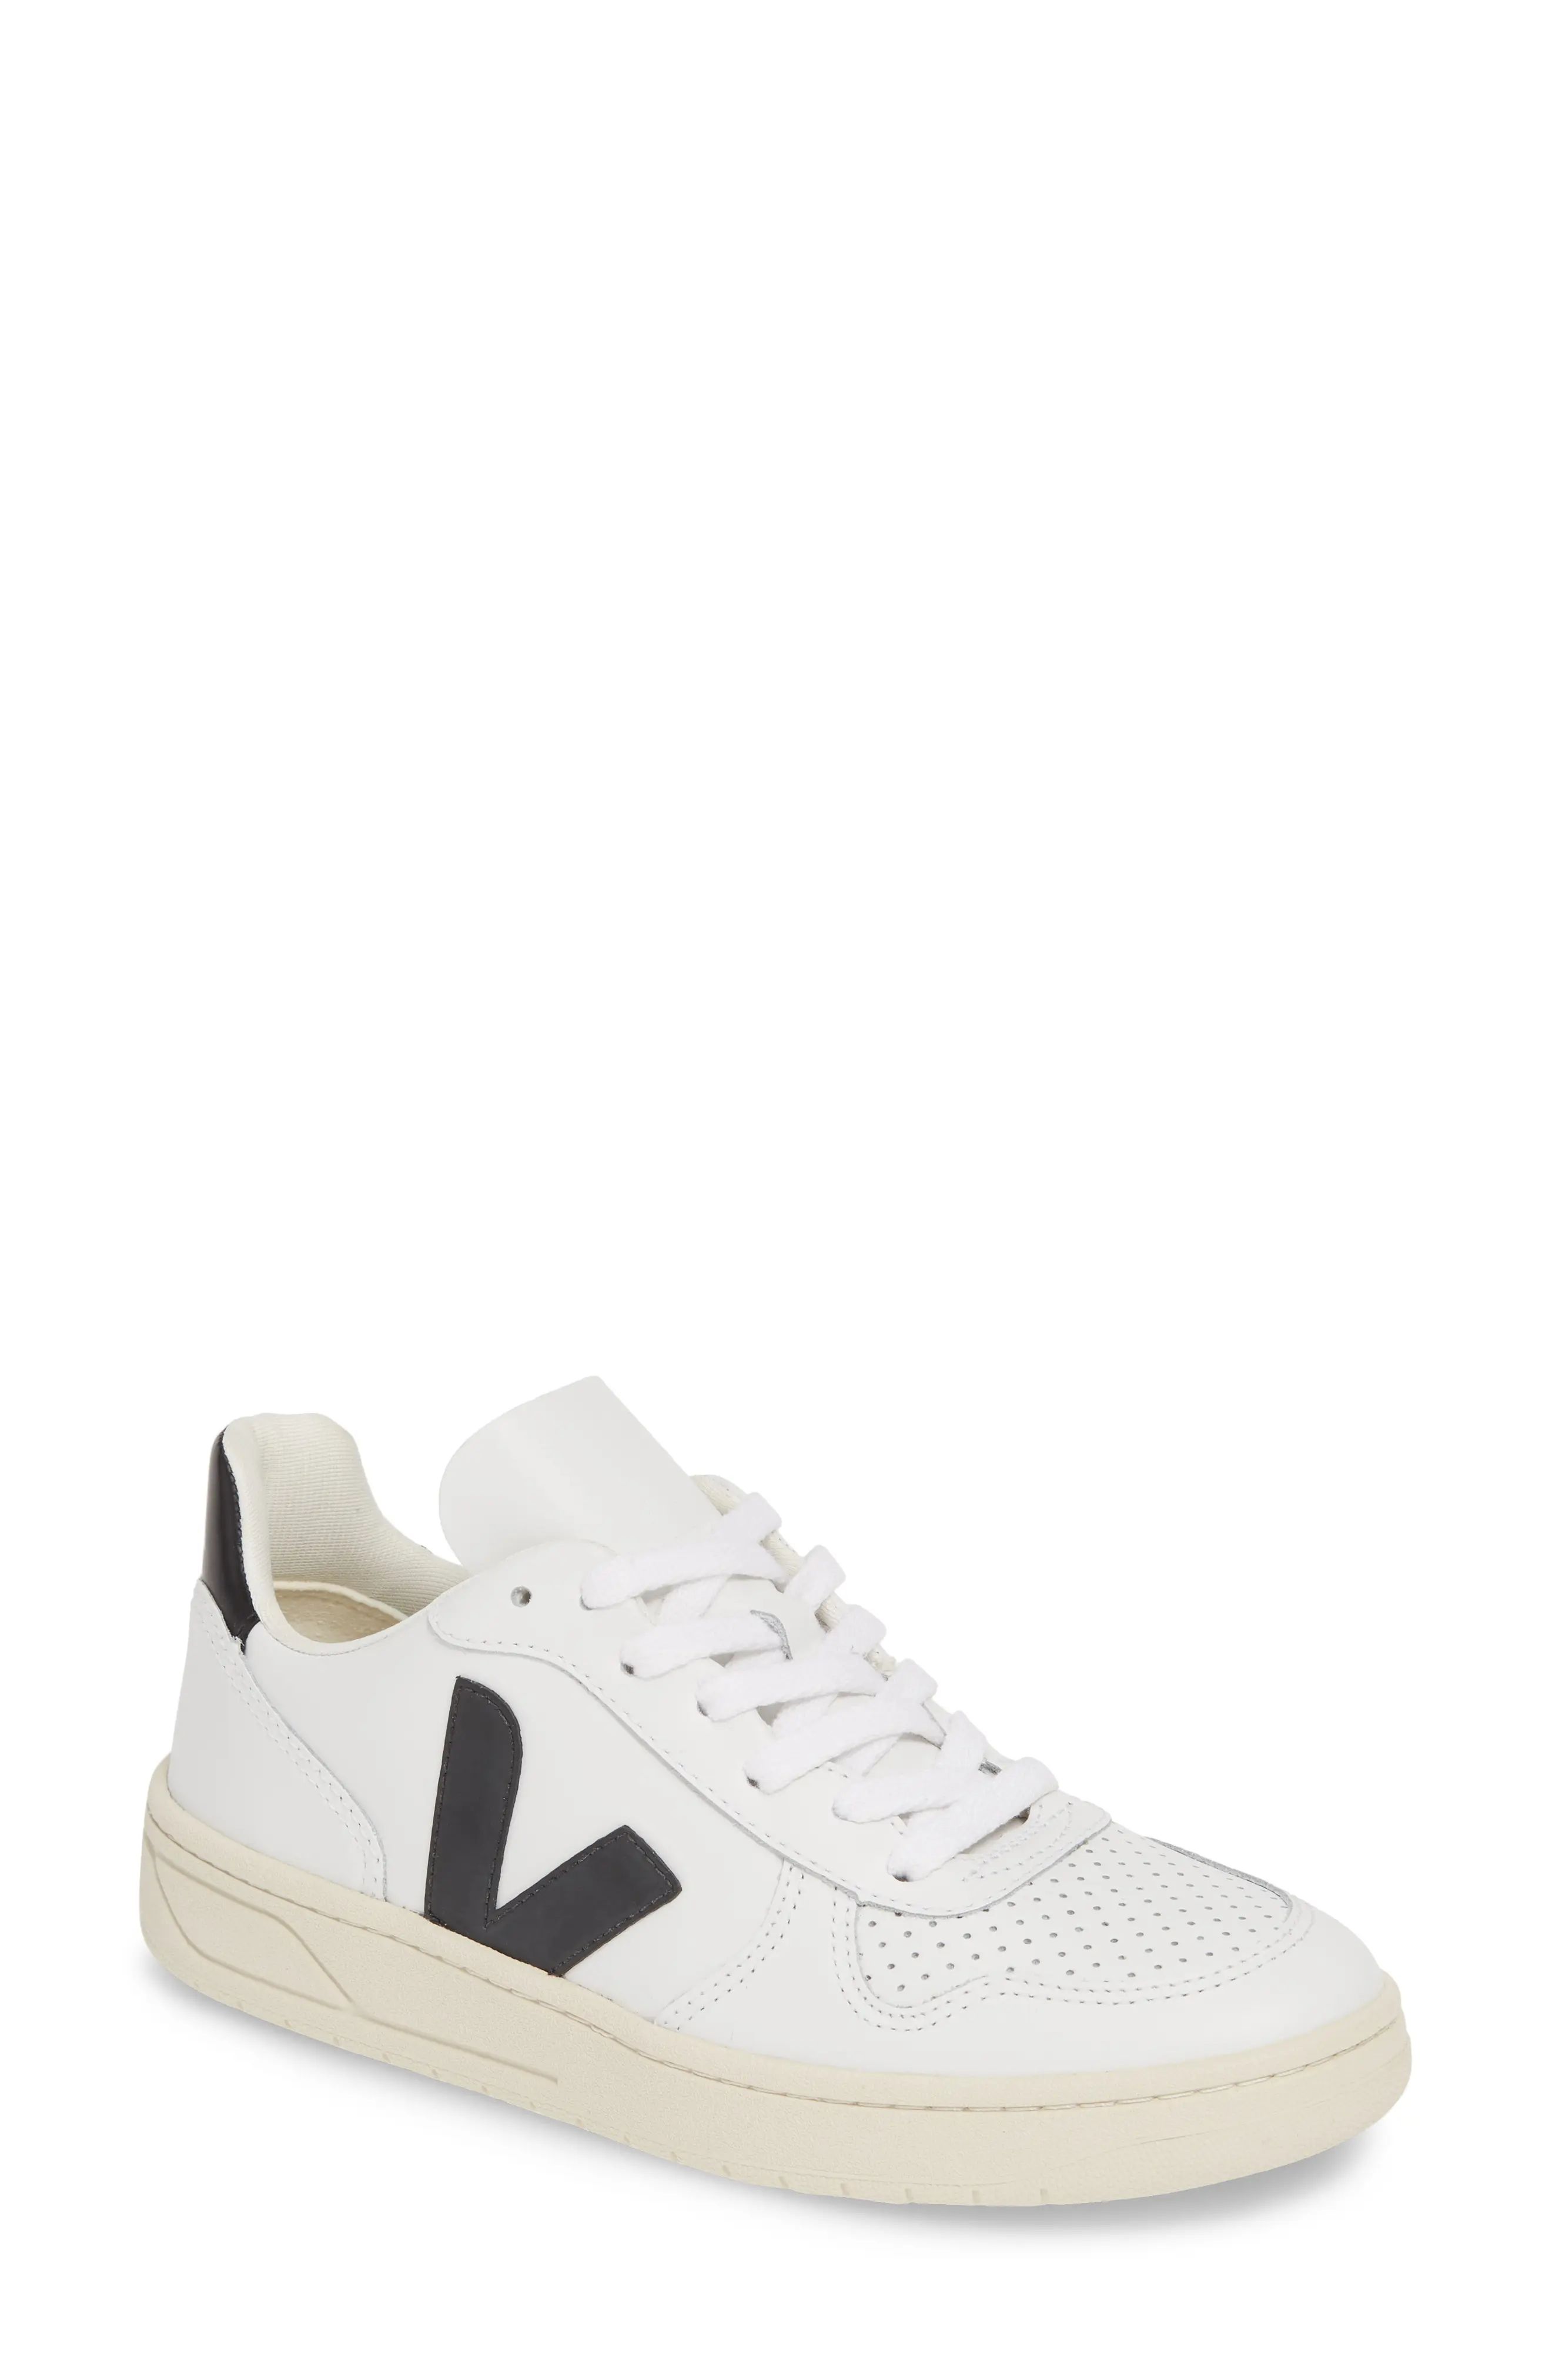 Veja V-10 Sneaker, Size 37Eu in Extra White/Black at Nordstrom | Nordstrom